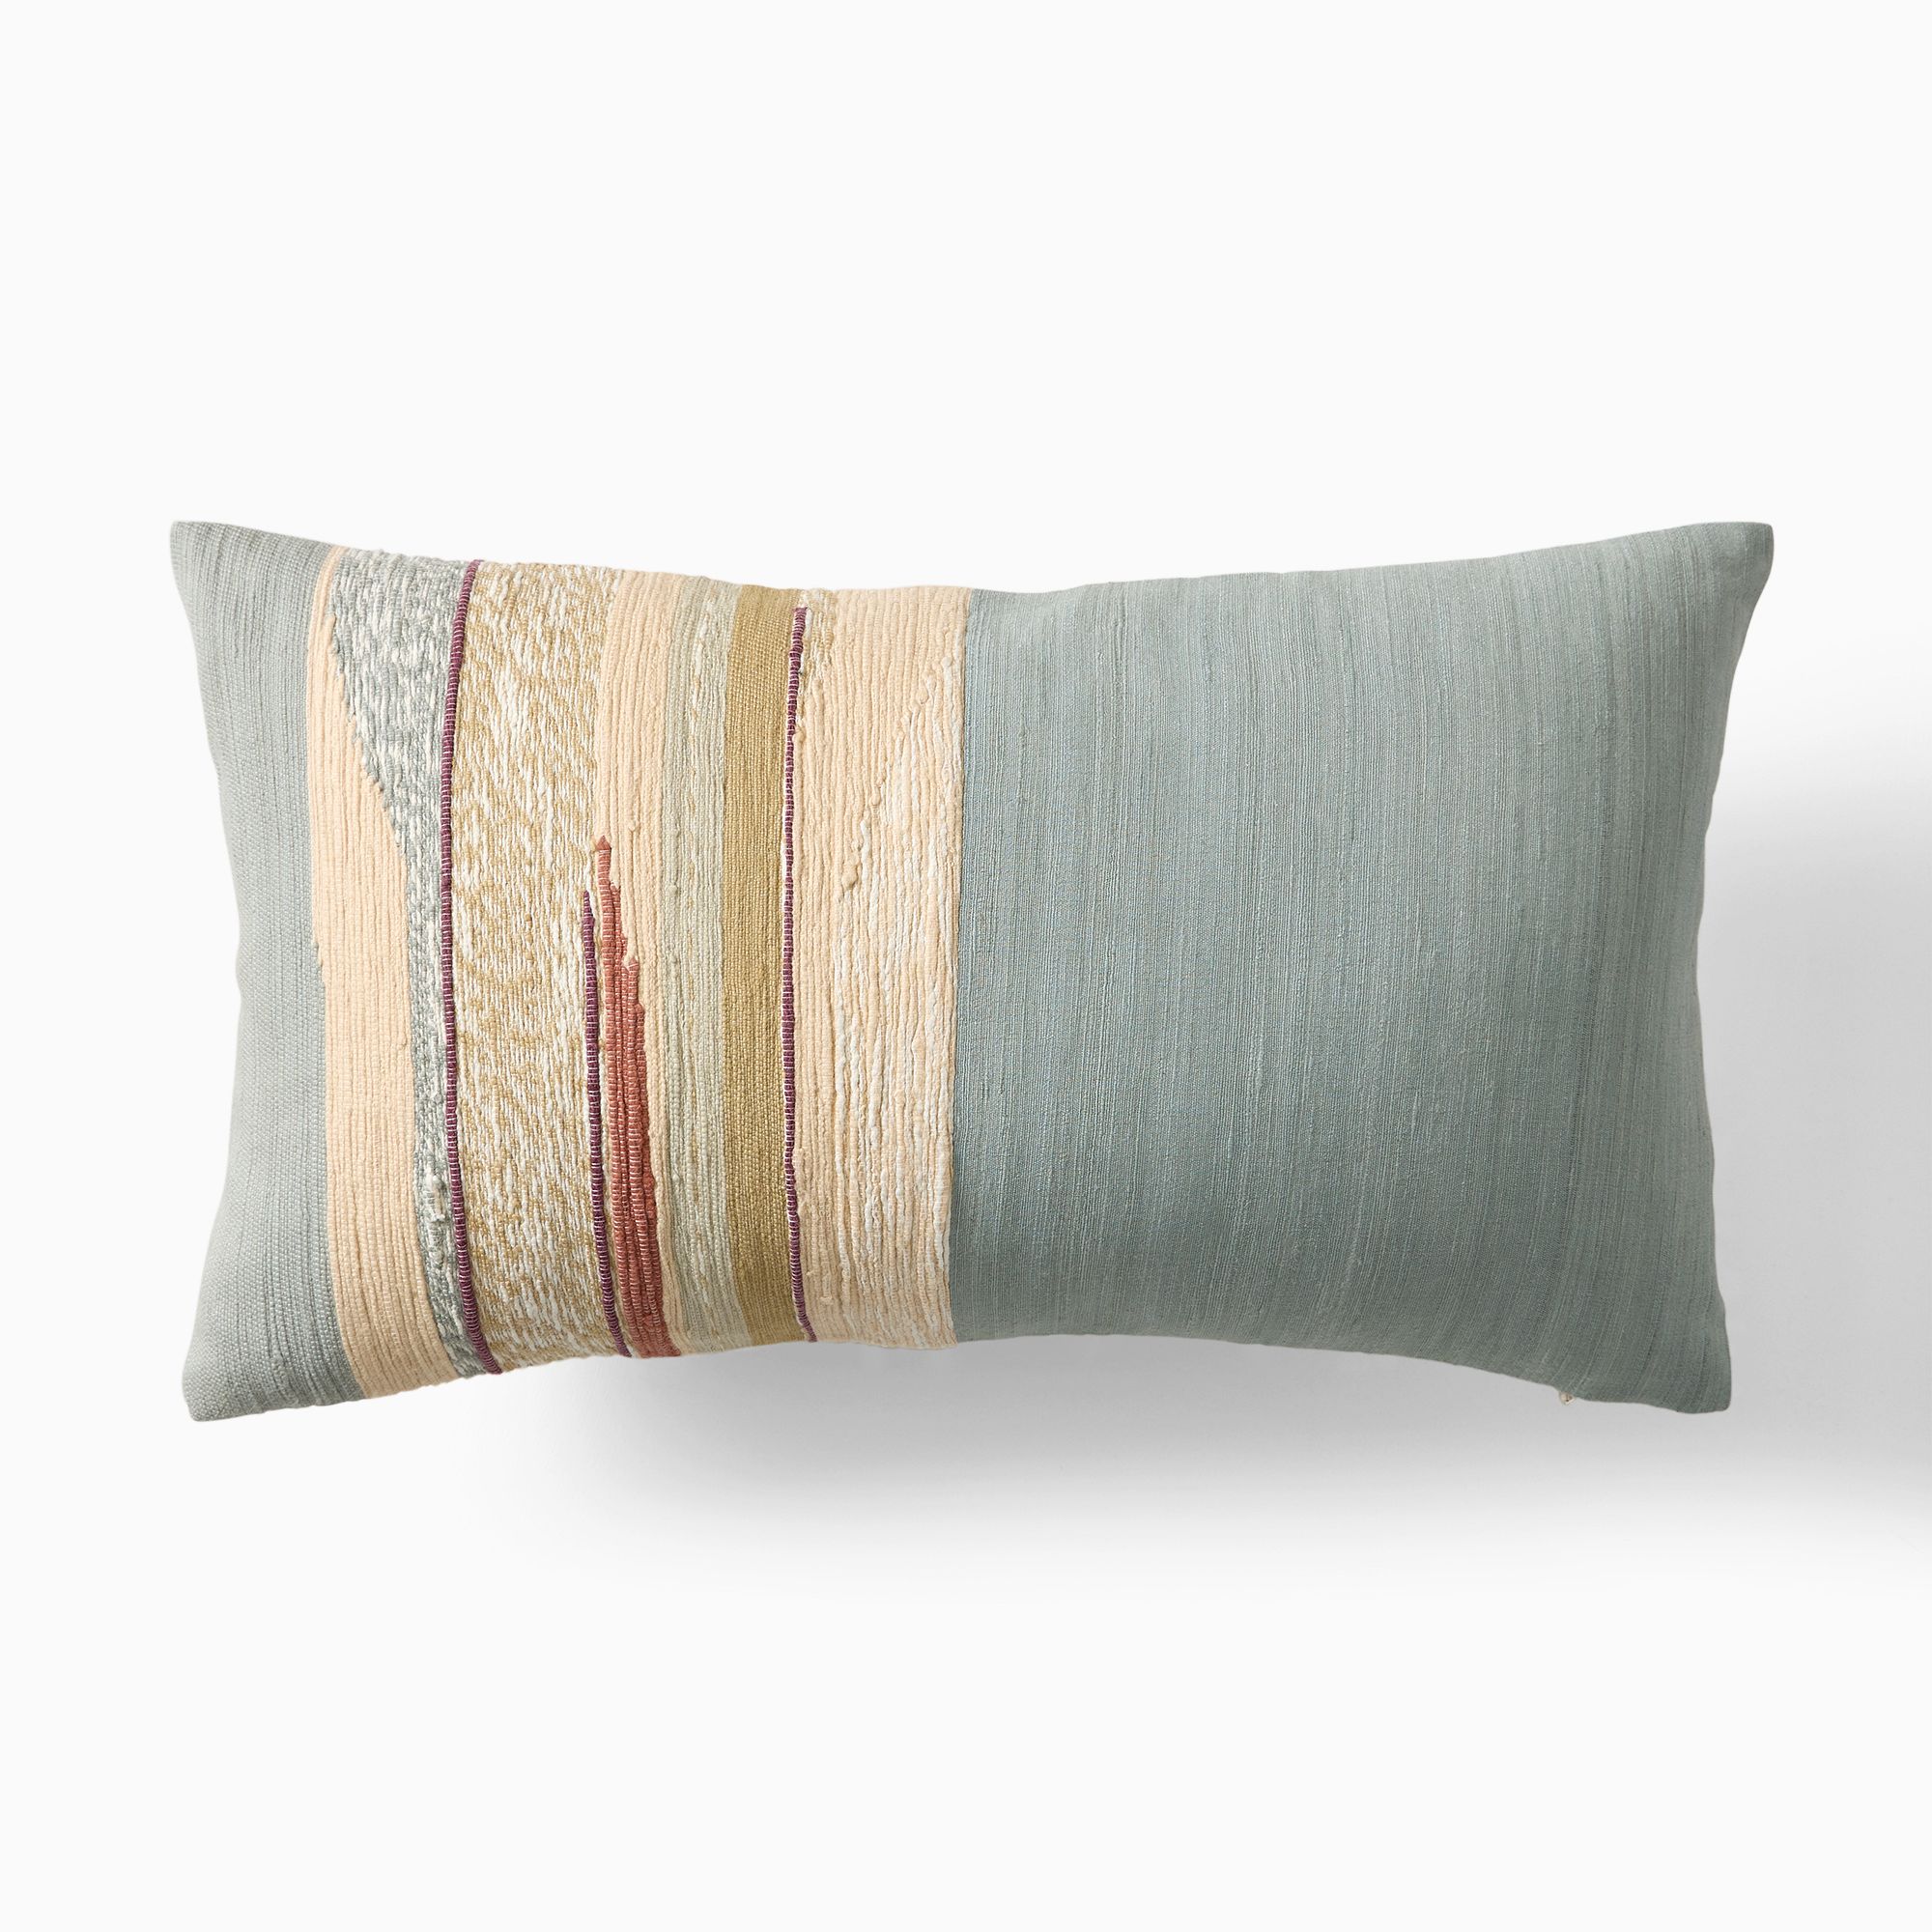 Mixed Woven Landscape Pillow Cover | West Elm